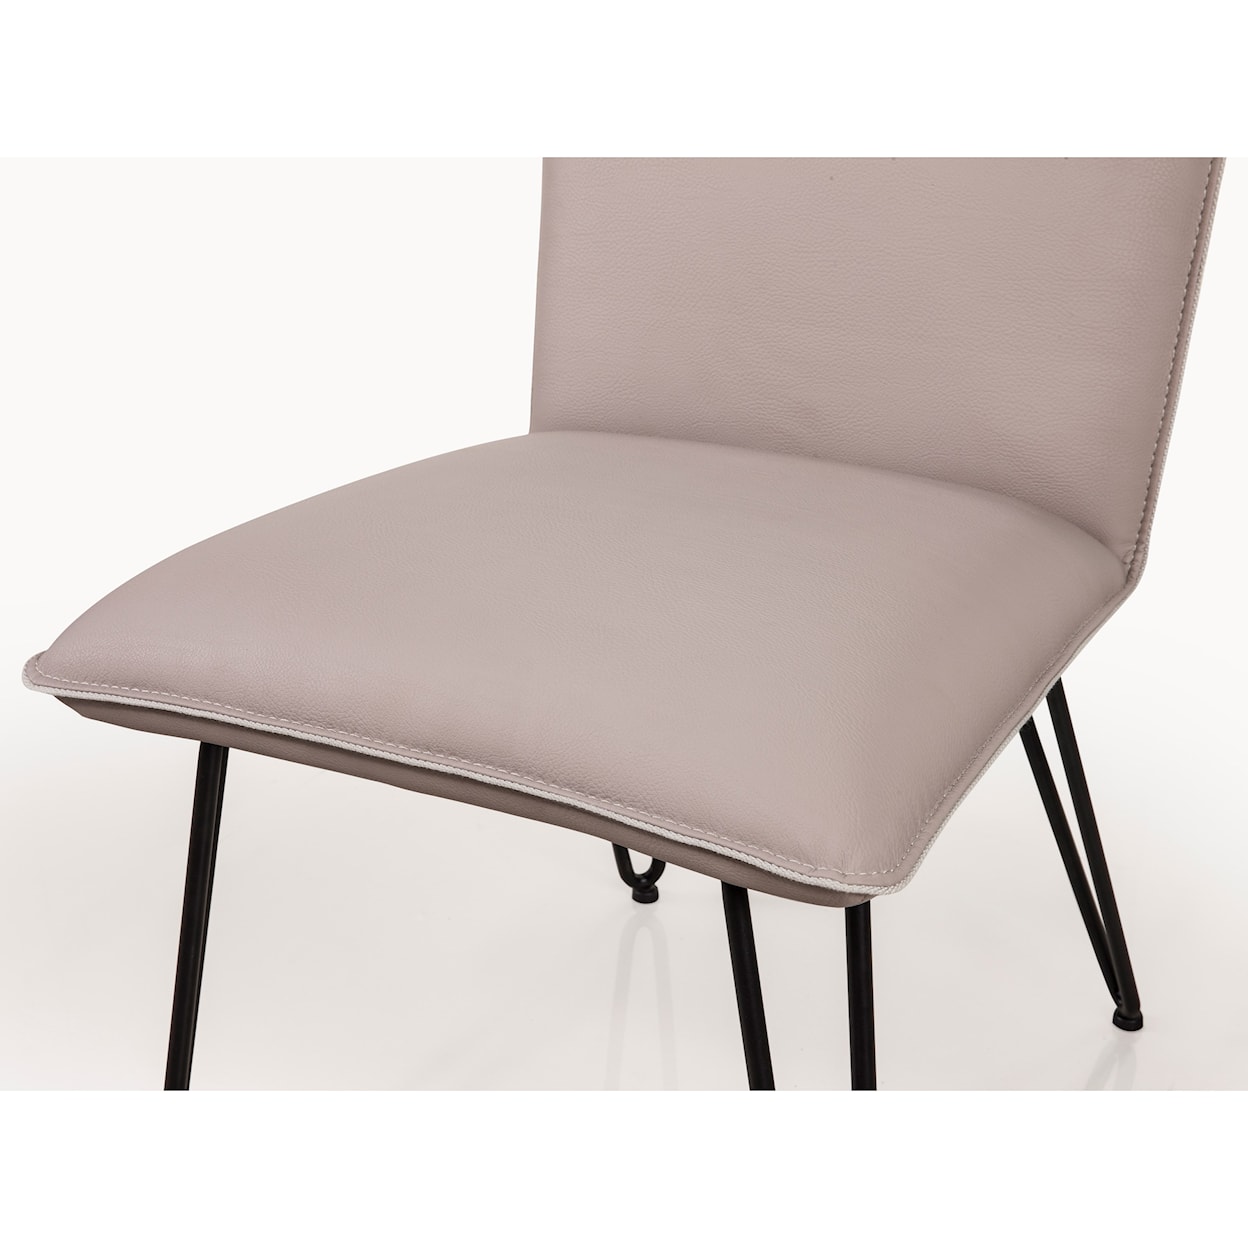 Modus International Crossroads Demi Hairpin Leg Modern Dining Chair